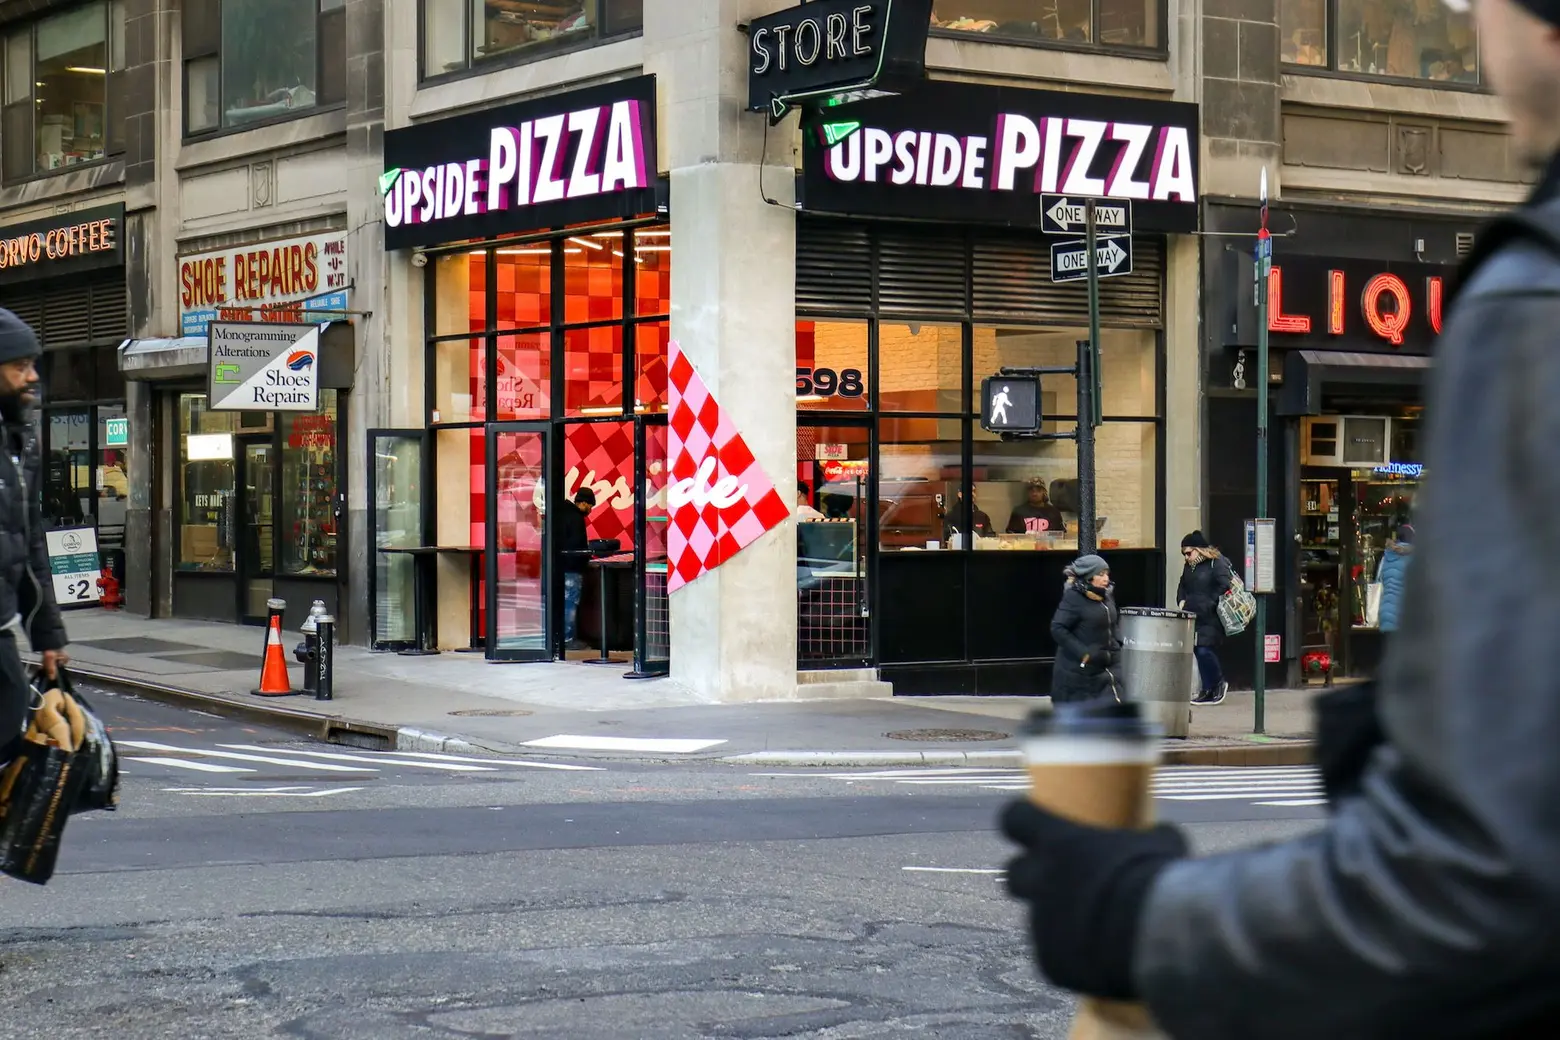 Noam Grossman, Upside Pizza, NYC restaurants